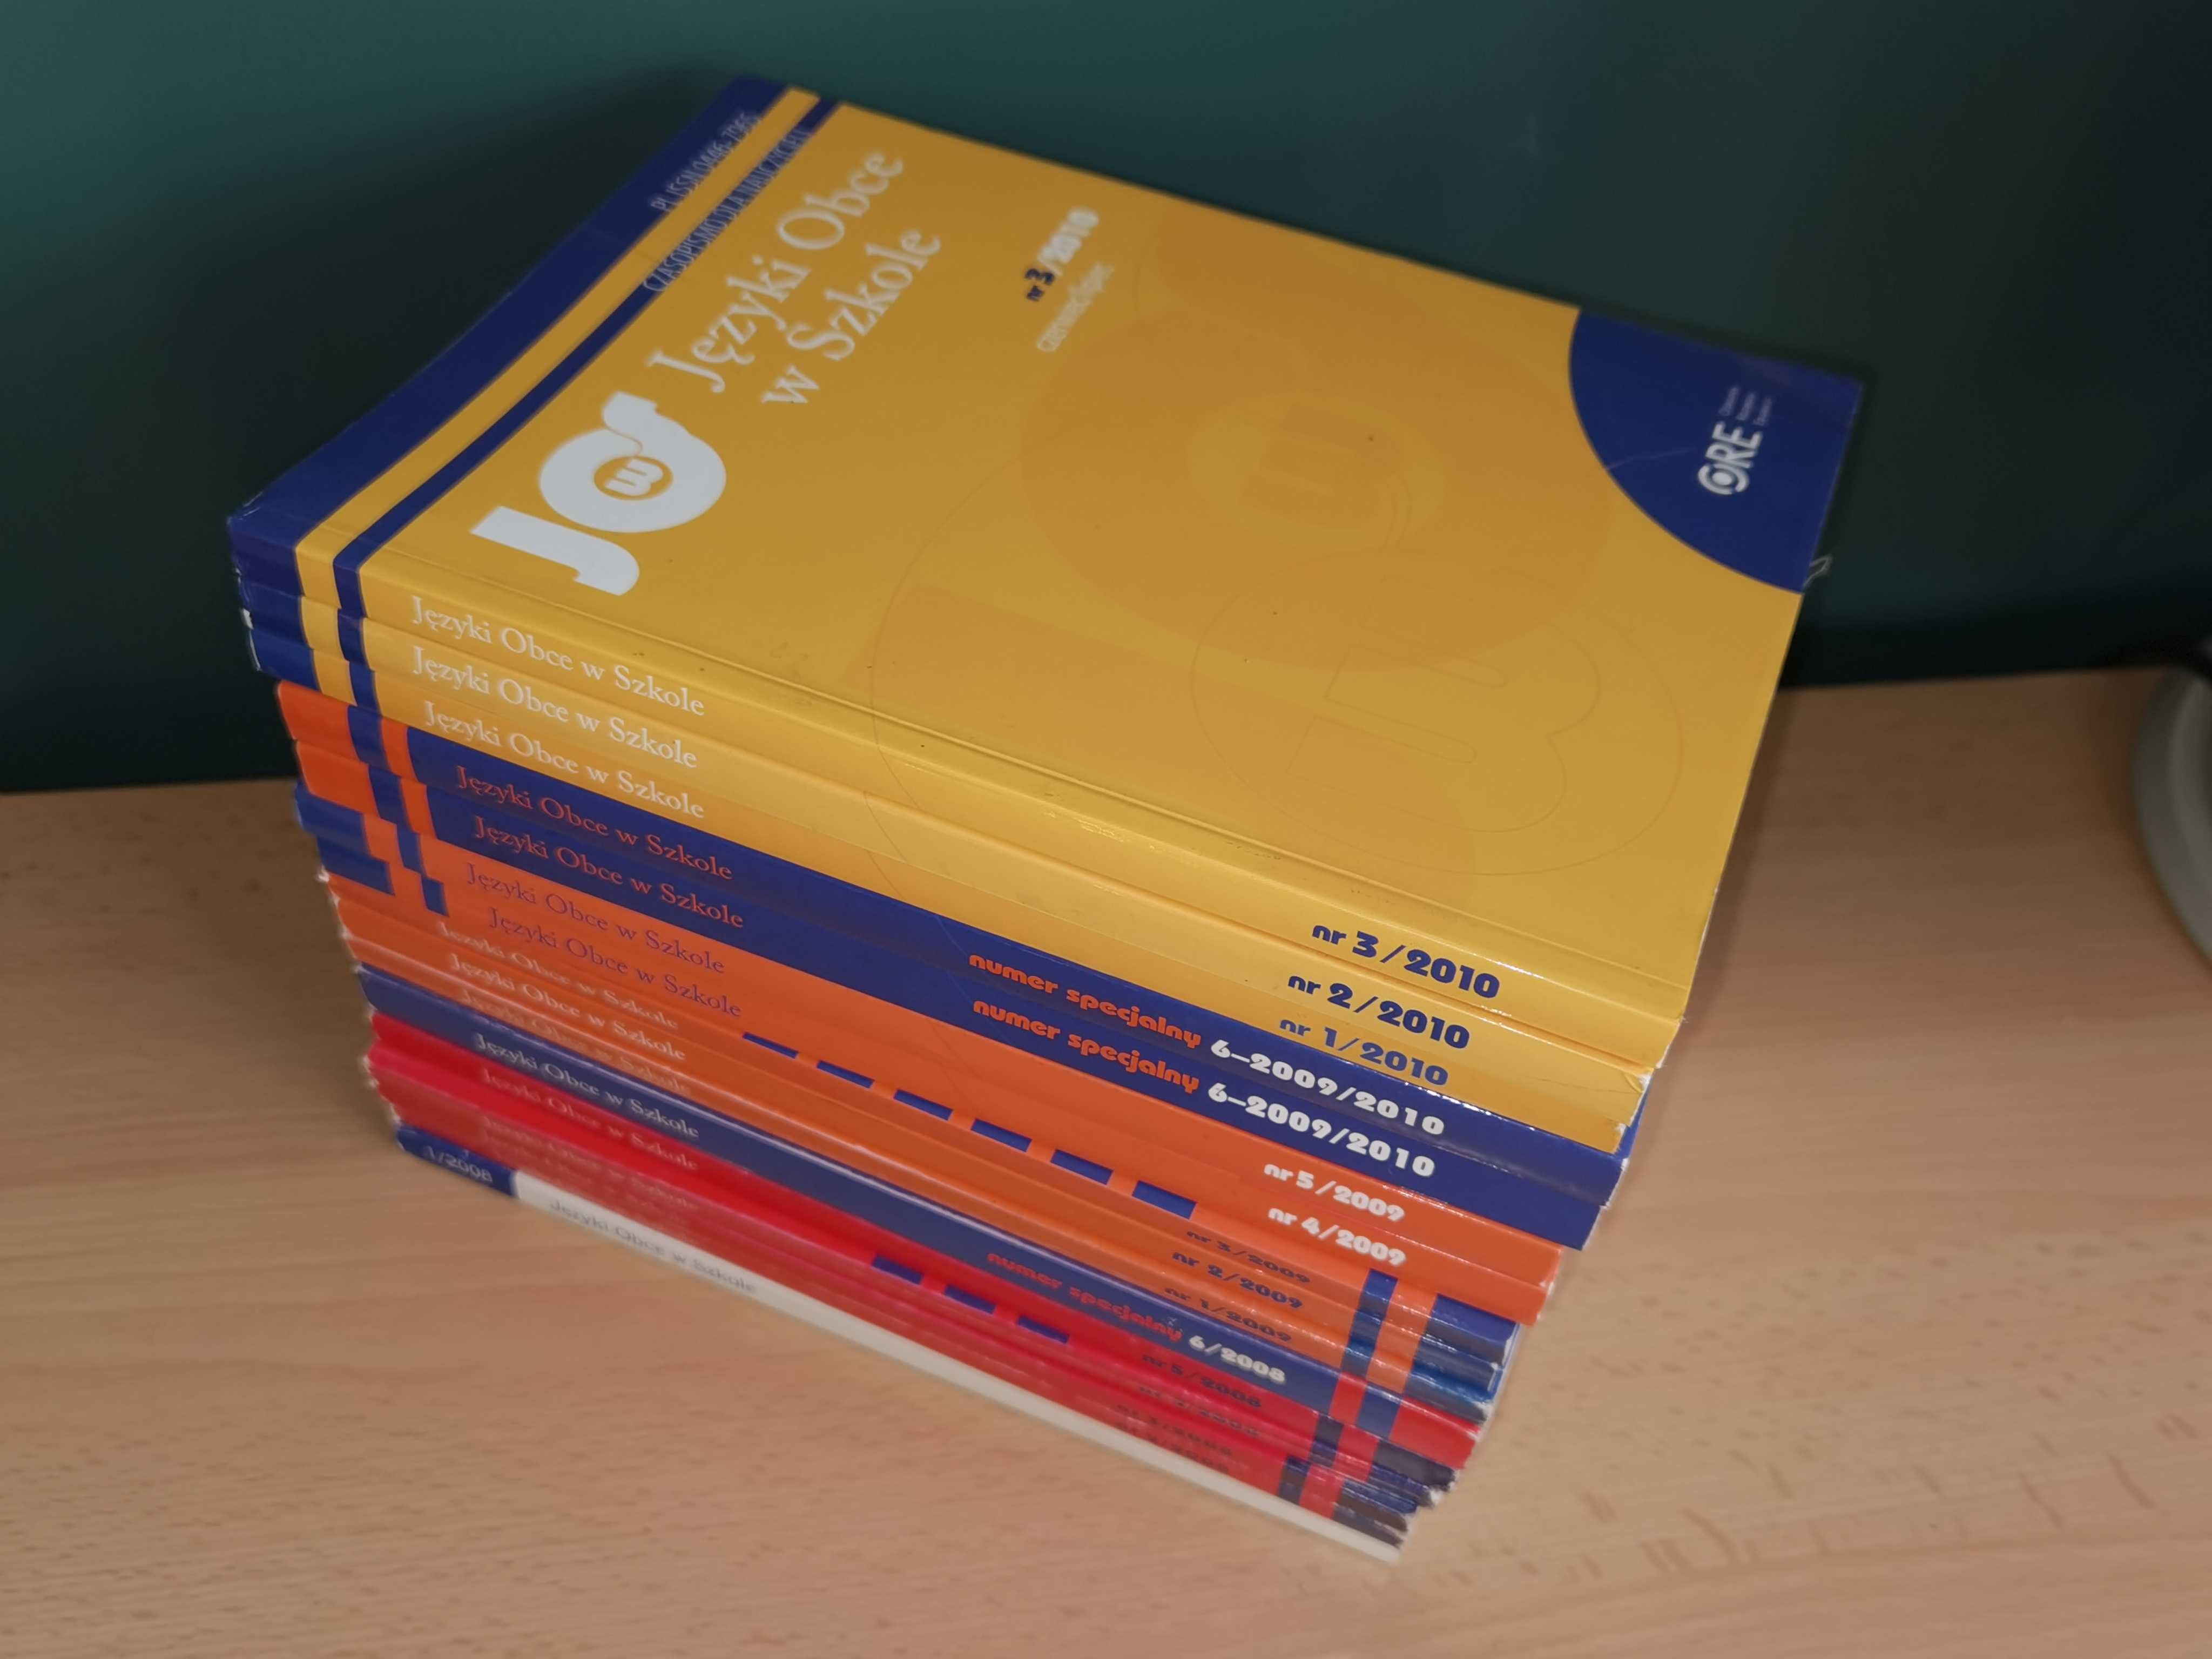 Języki Obce w Szkole - czasopismo dla nauczycieli. 16 numerów